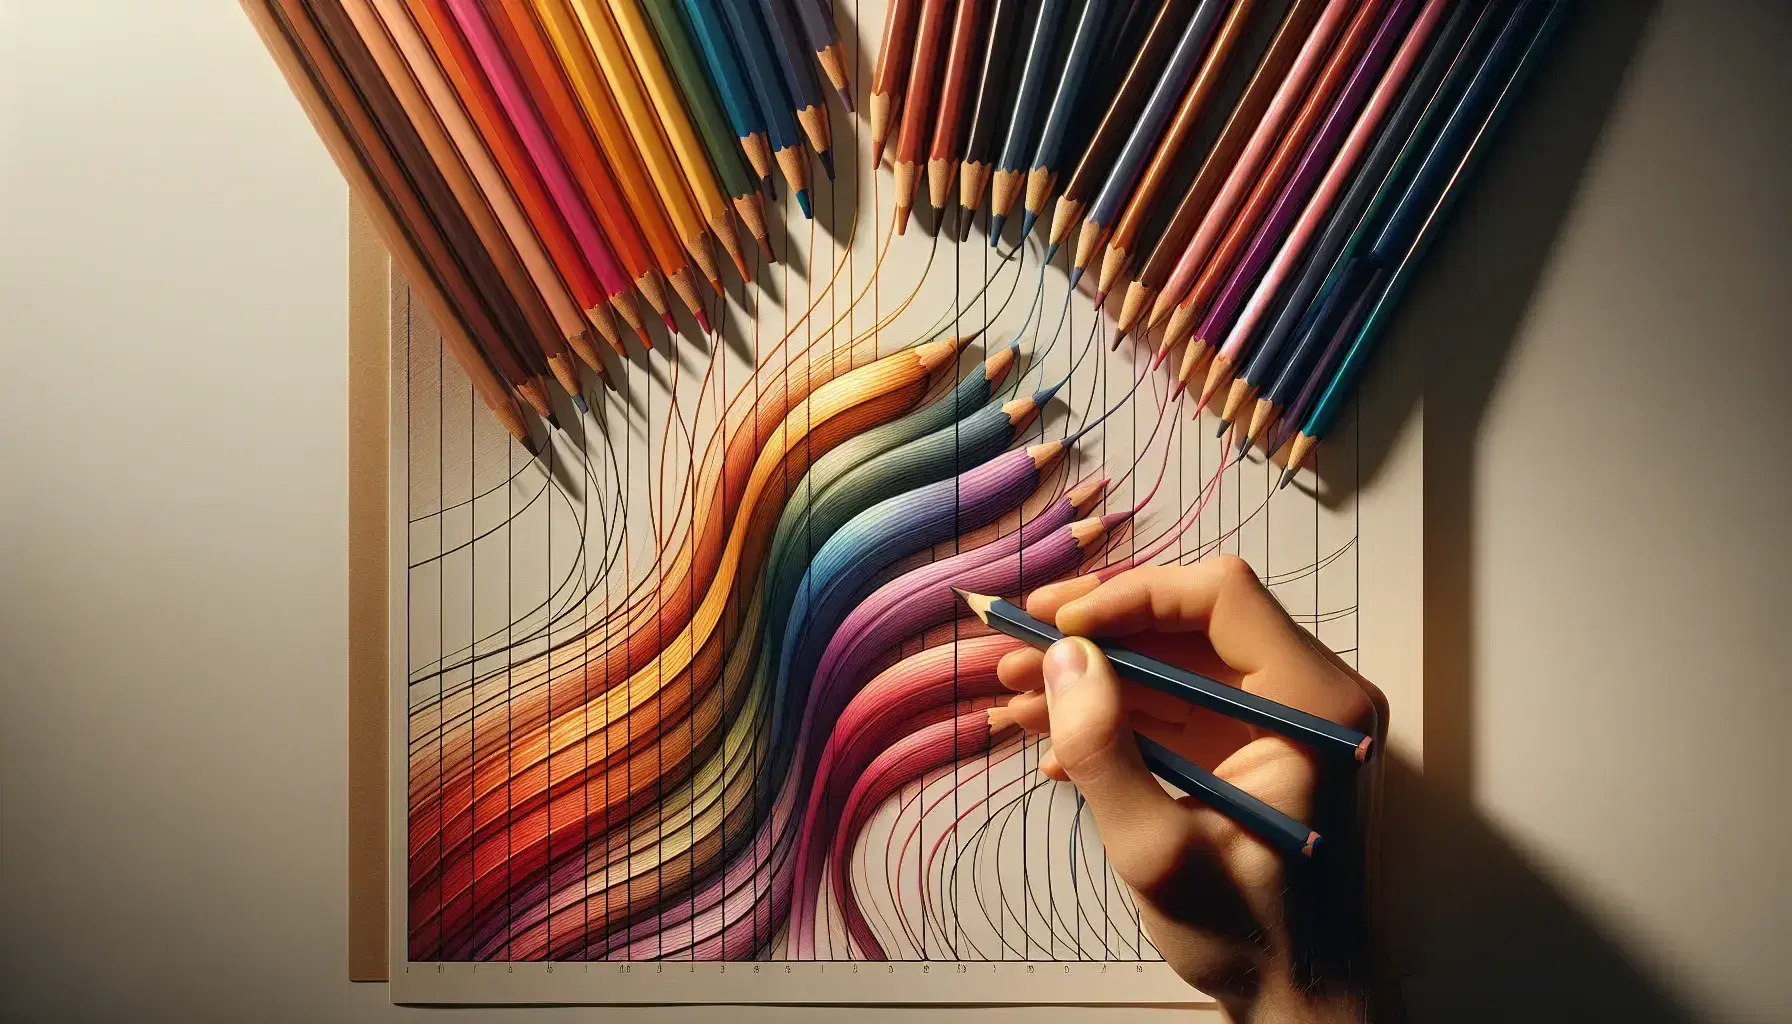 Mano seleccionando lápices de colores de una gama que incluye tonos cálidos y fríos sobre papel con trazos curvos, sugiriendo el inicio de un mapa mental.